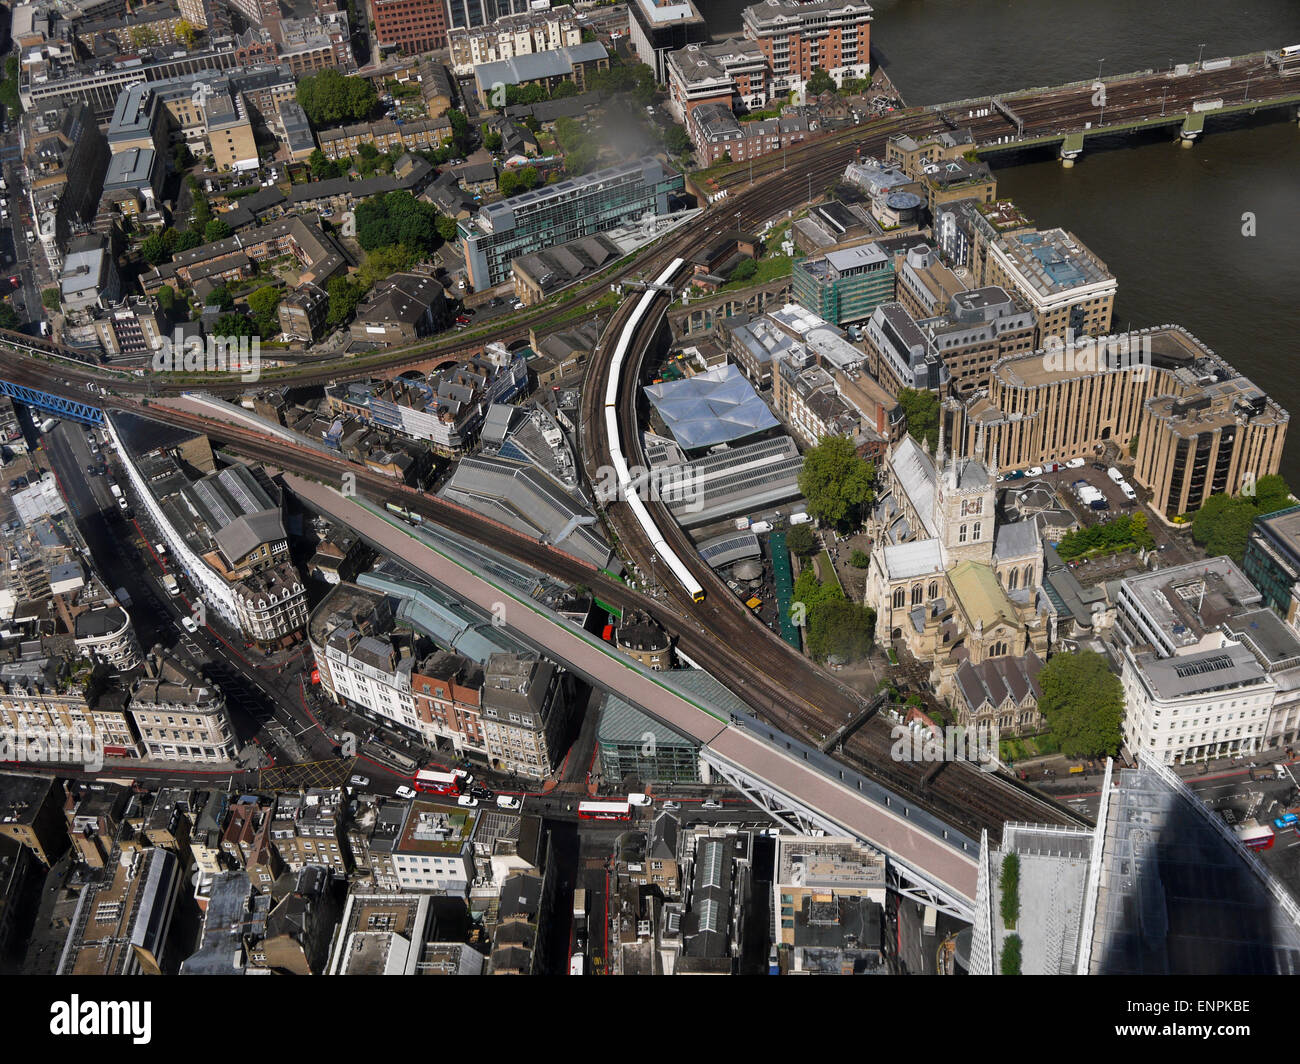 Eisenbahnlinie von London Bridge Station in Southwark, London Bridge und die Themse von The Shard London Bridge, London, UK. Stockfoto